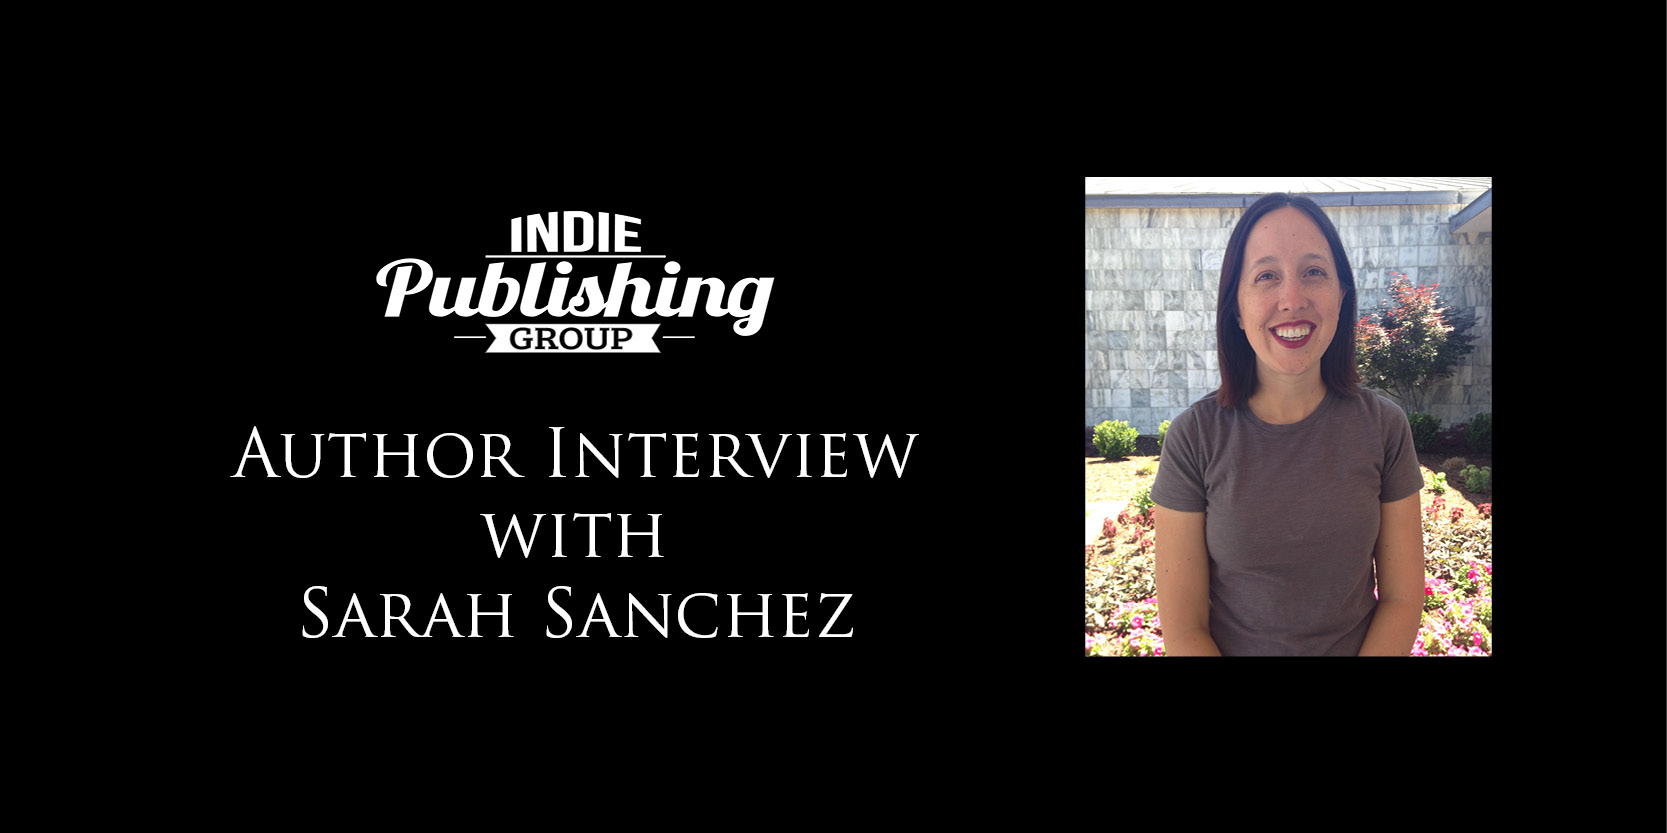 Author Interview Sarah Sanchez|Sunwalker Final Front Cover Only 5-17-16|Sunwalker Final Front Cover Only 5-17-16|Sarah Sanchez Sunwalker|Sarah Sanchez Sunwalker Cover